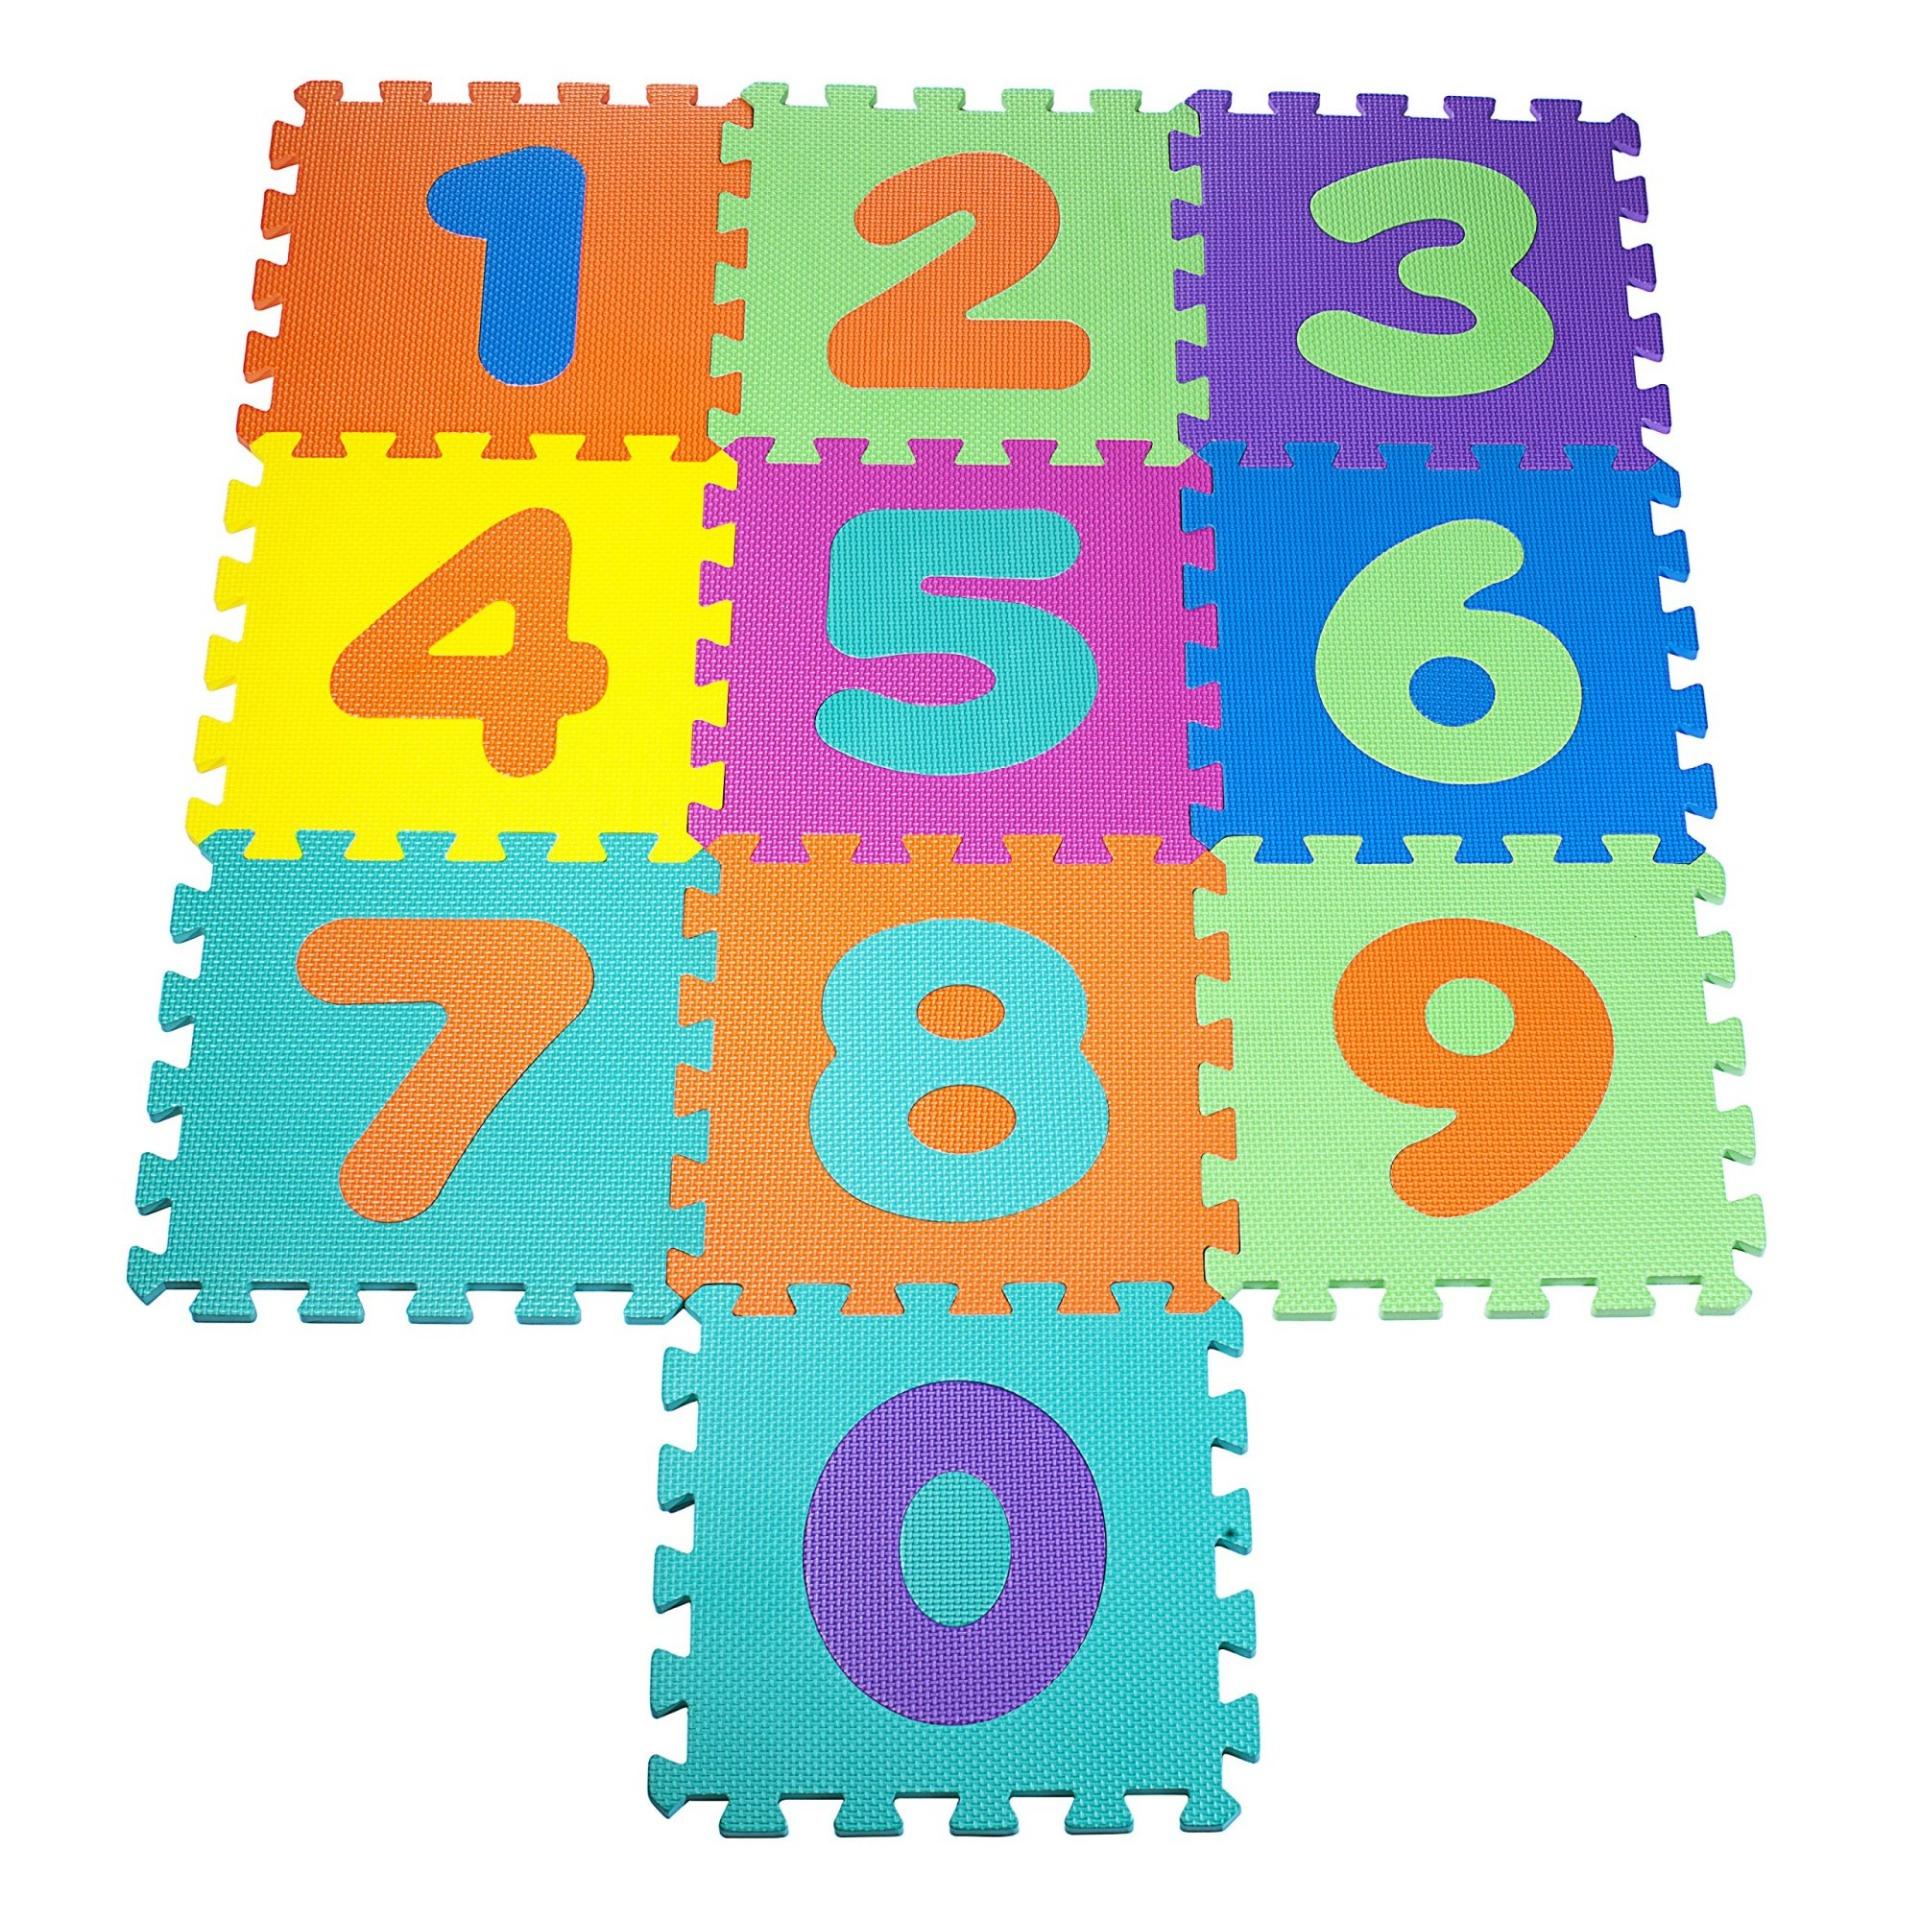 thetoy แผ่นรองคลาน เสื่อรองคลาน ตัวเลข 1-0 ขนาด 30*30 ซม. หนา 0.8 ซม. จำนวน 10 แผ่น ของเล่นเด็ก แผ่นรองคลาน